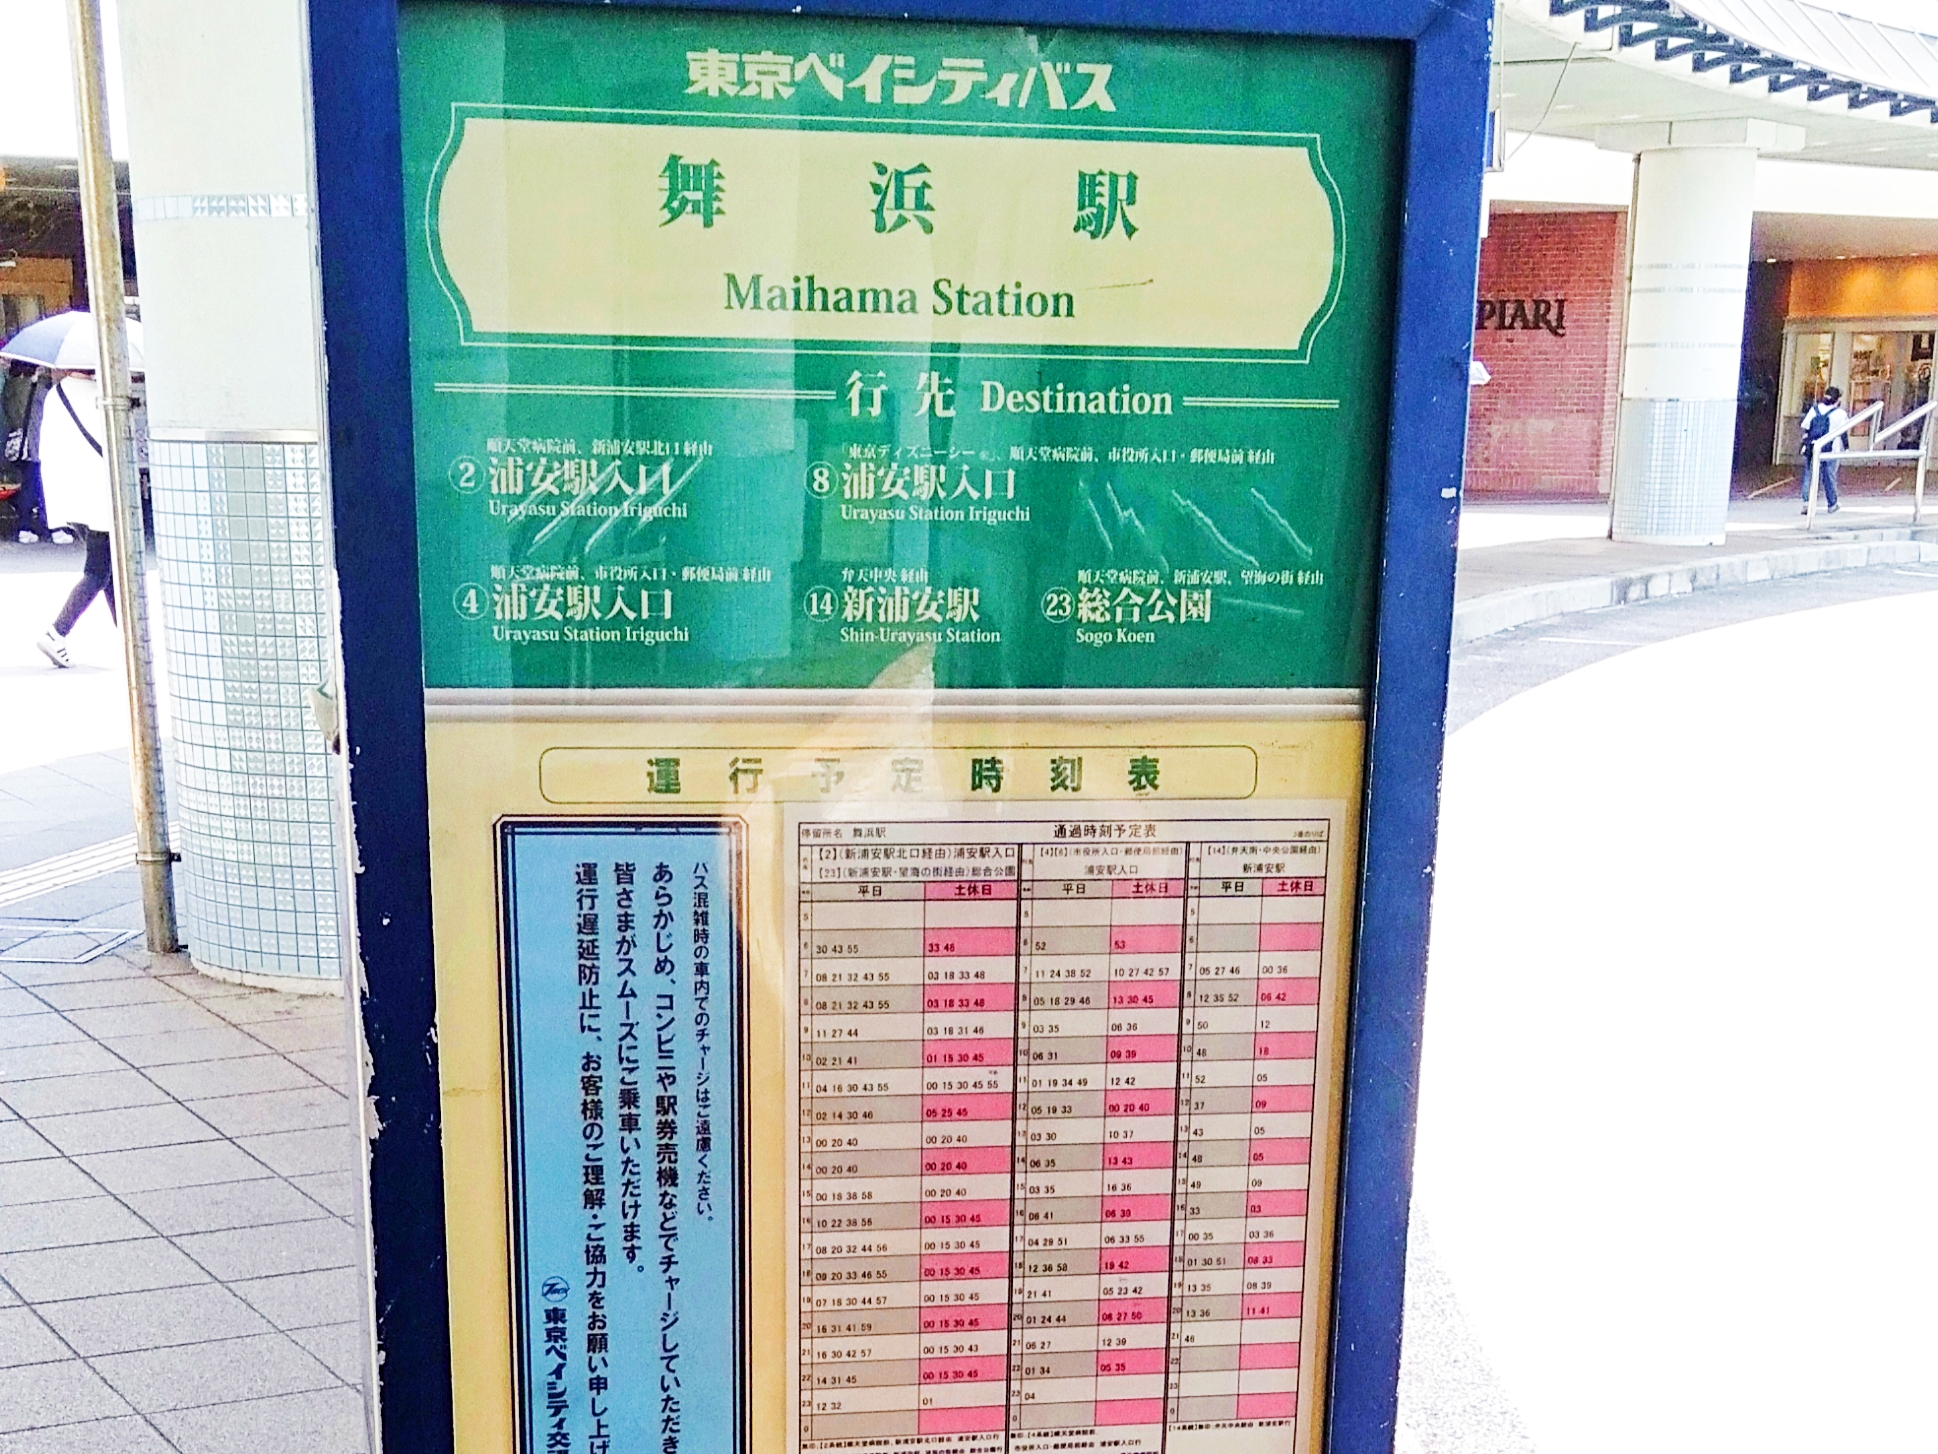 路線バス3番乗場より「浦安駅」「総合公園」行きに乗車「サンコーポ西口」バス停で下車。（約15分/15